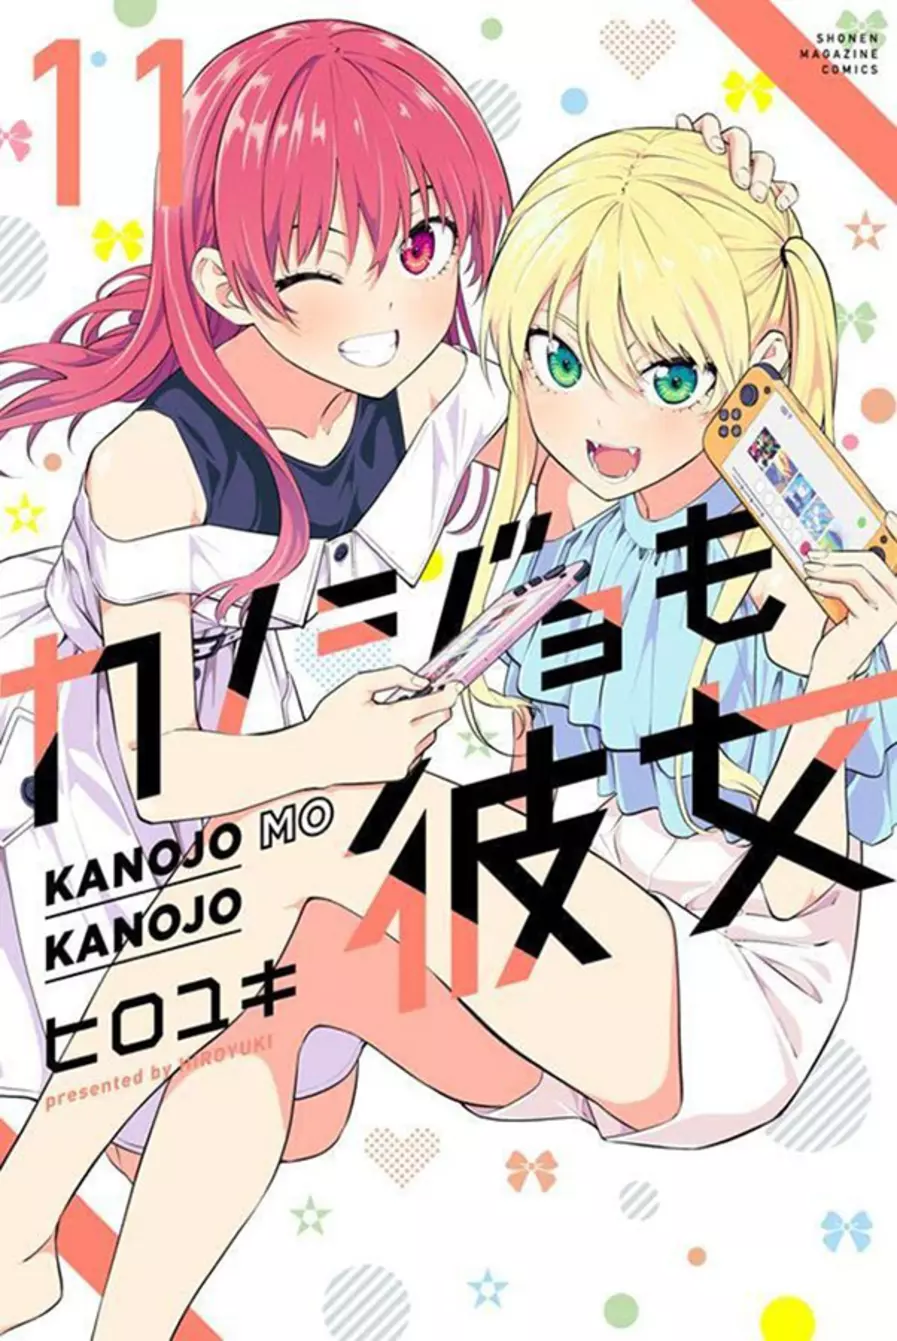 Kanojo Mo Kanojo - Confissões e Namoradas Vol. 13 em Promoção na